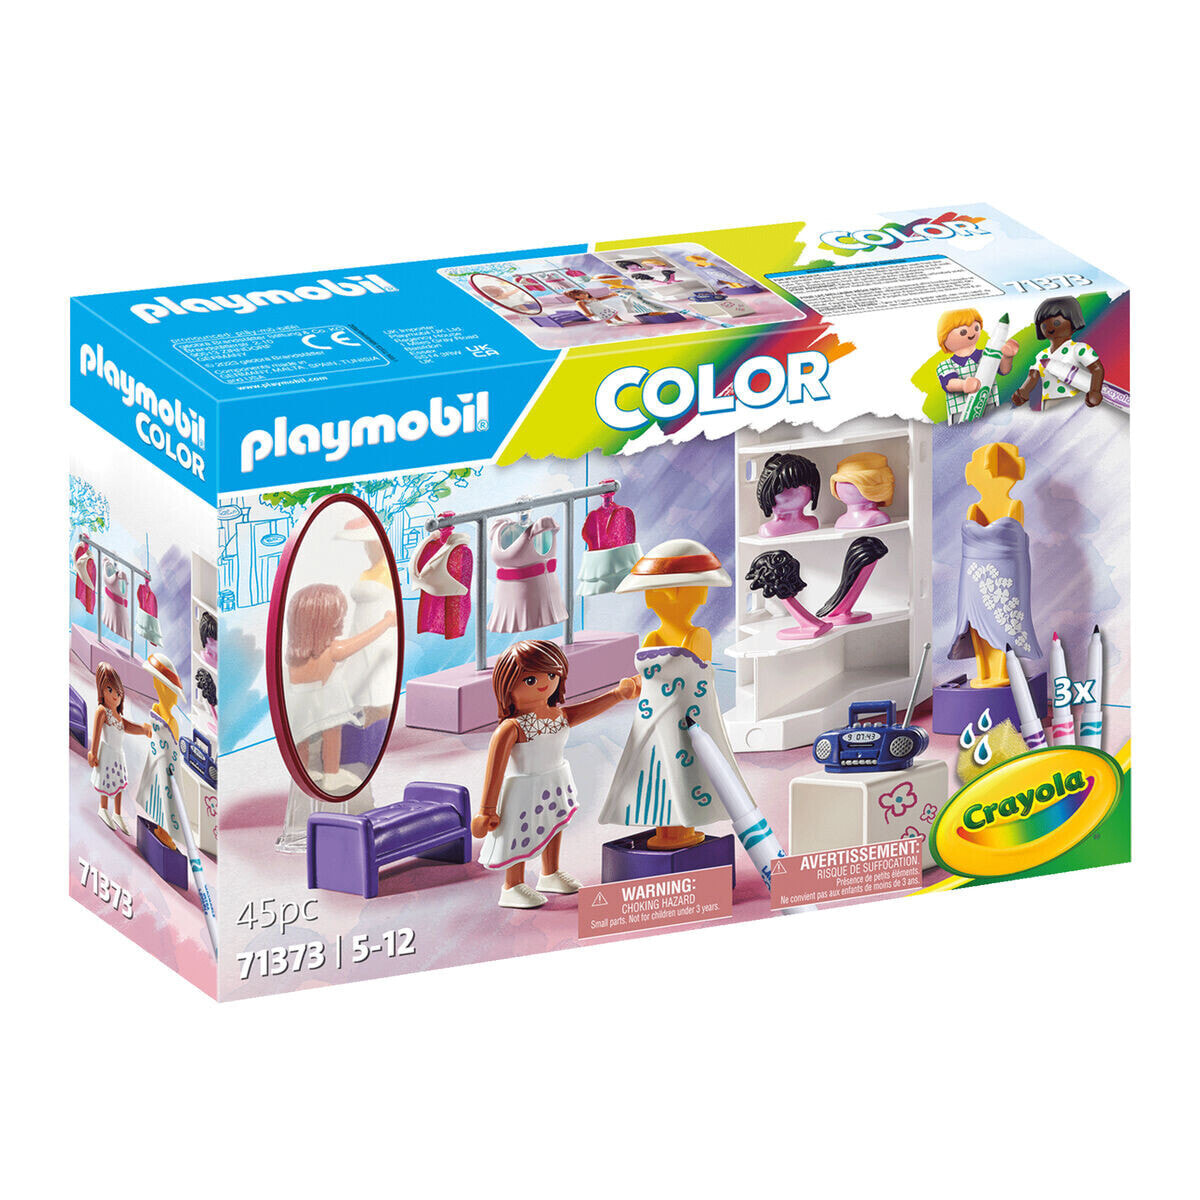 Playset Playmobil 71373 Color 45 Pieces